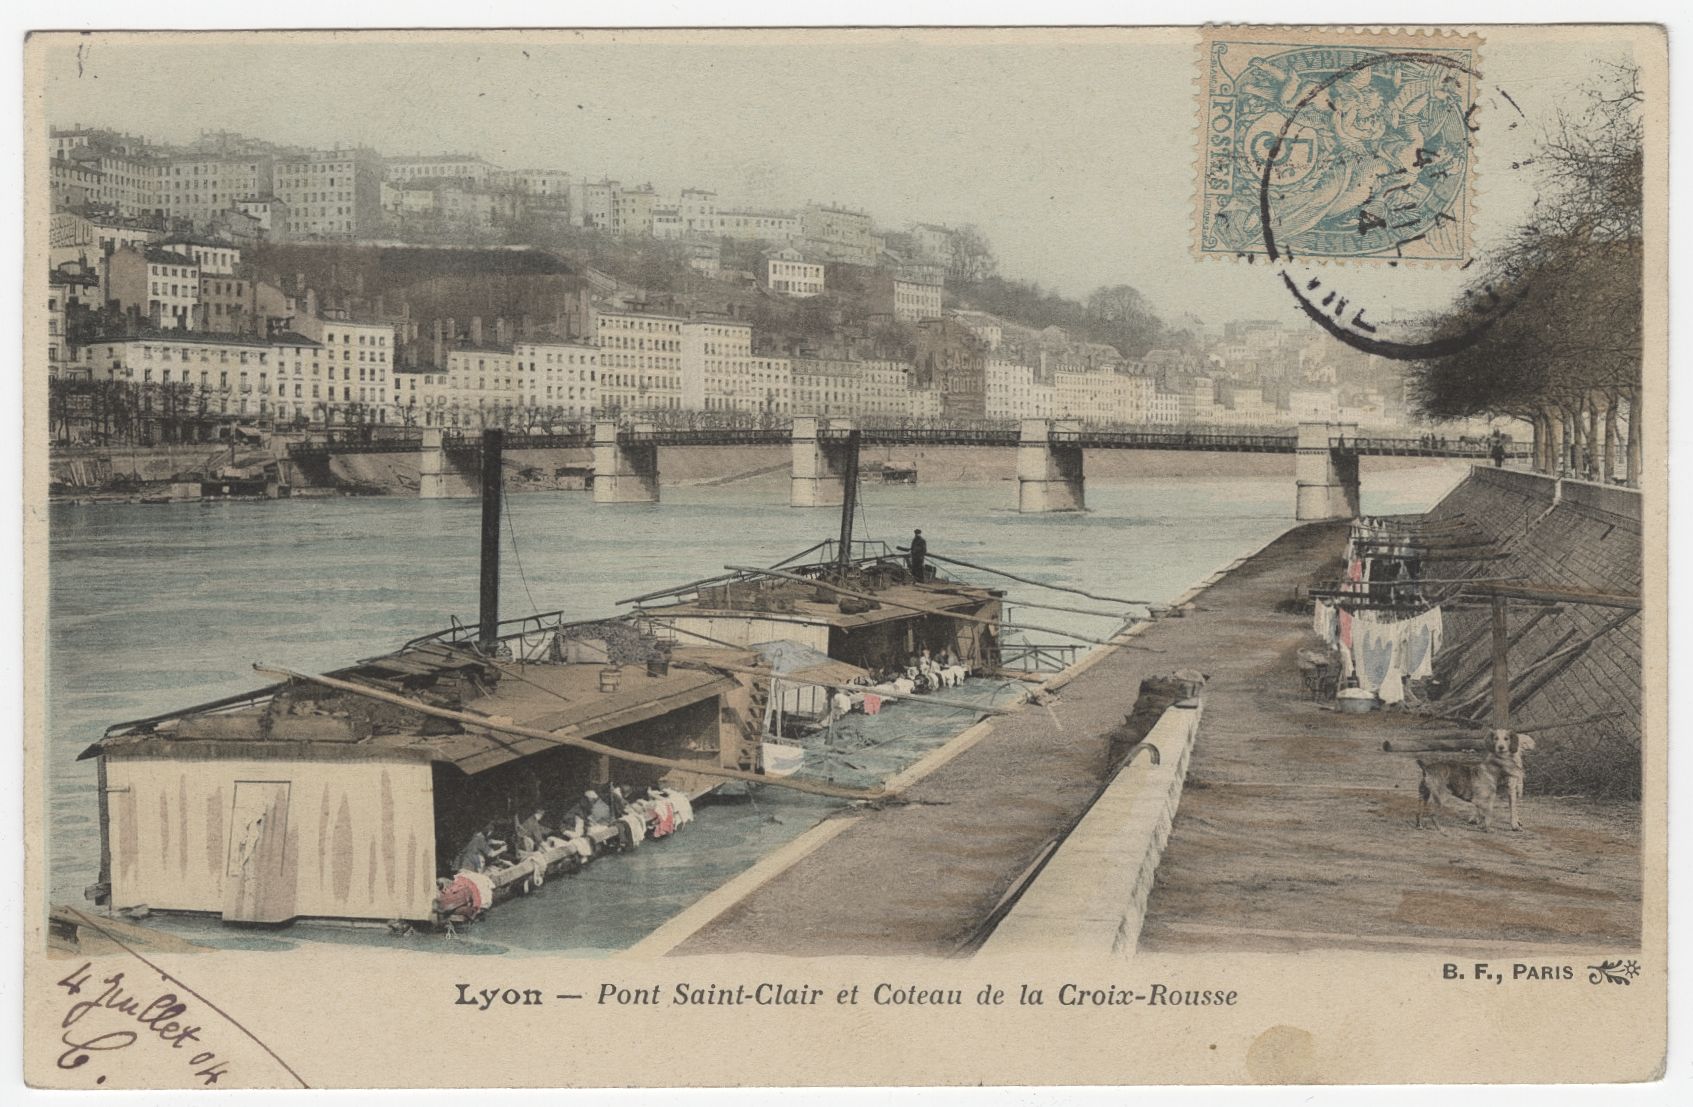 Lyon - Pont Saint-Clair et coteau de la Croix-Rousse, lavoirs : carte postale colorisée (vers 1904, cote : 4FI/3386)